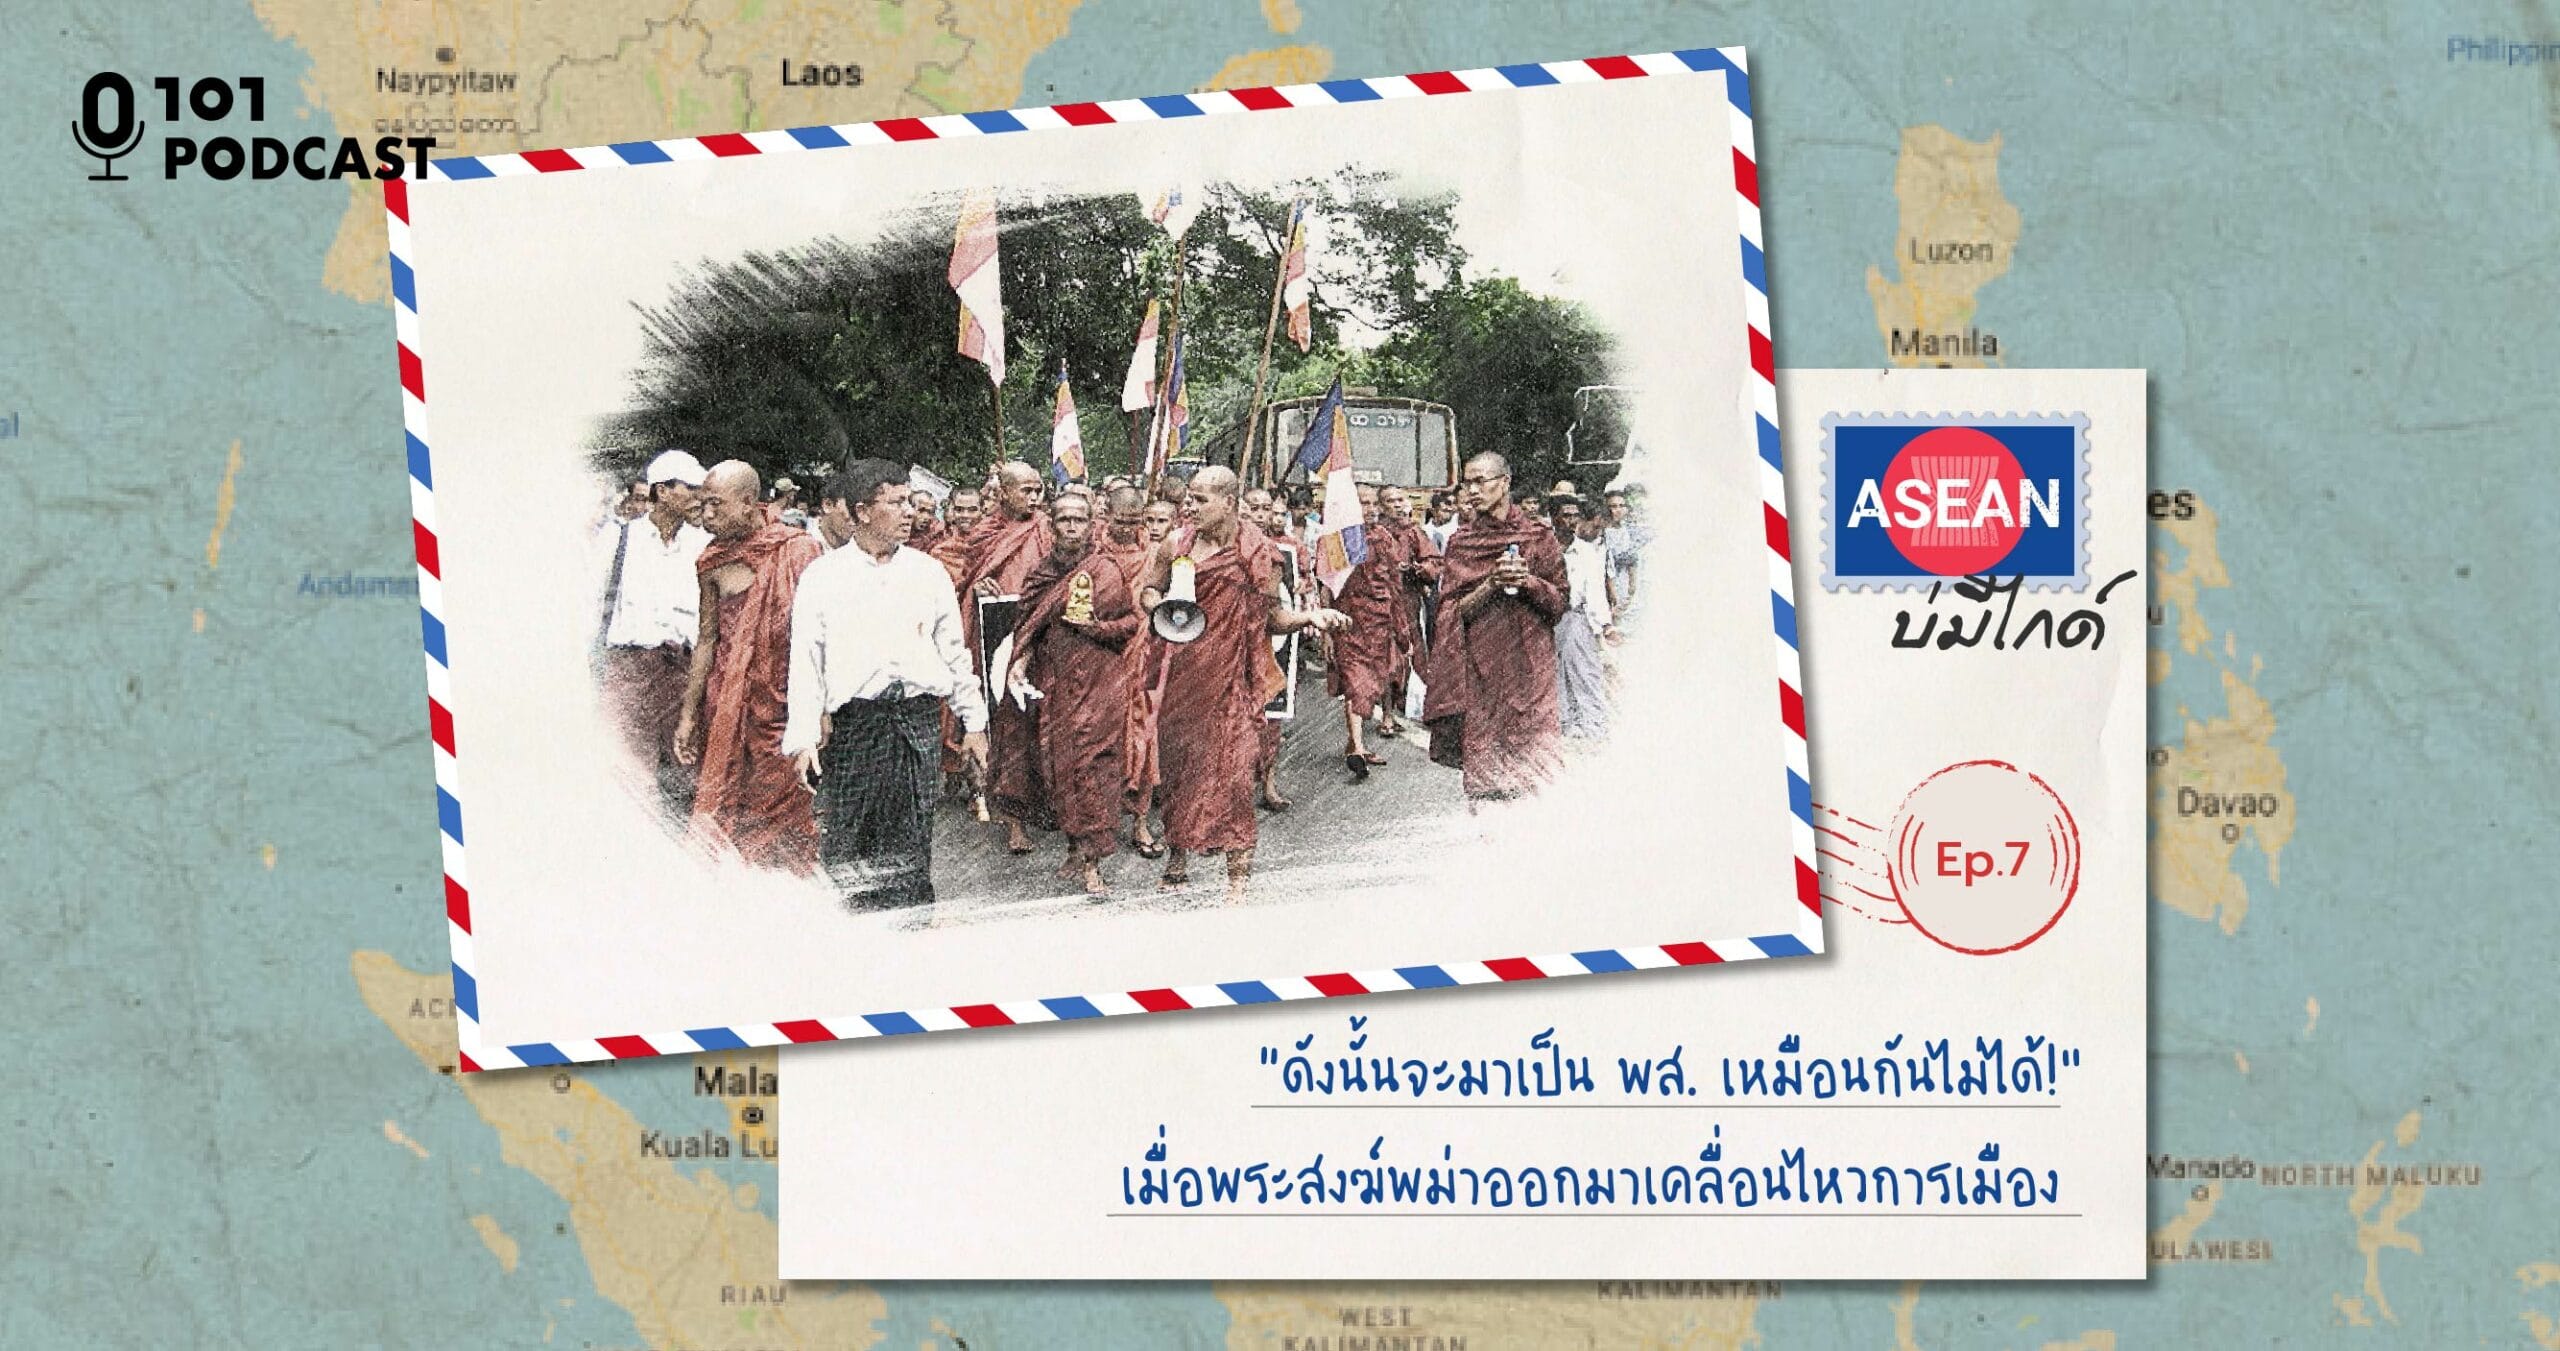 ASEAN บ่มีไกด์ Ep.7: “ดังนั้นจะมาเป็น พส. เหมือนกันไม่ได้!” เมื่อพระสงฆ์พม่าออกมาเคลื่อนไหวการเมือง